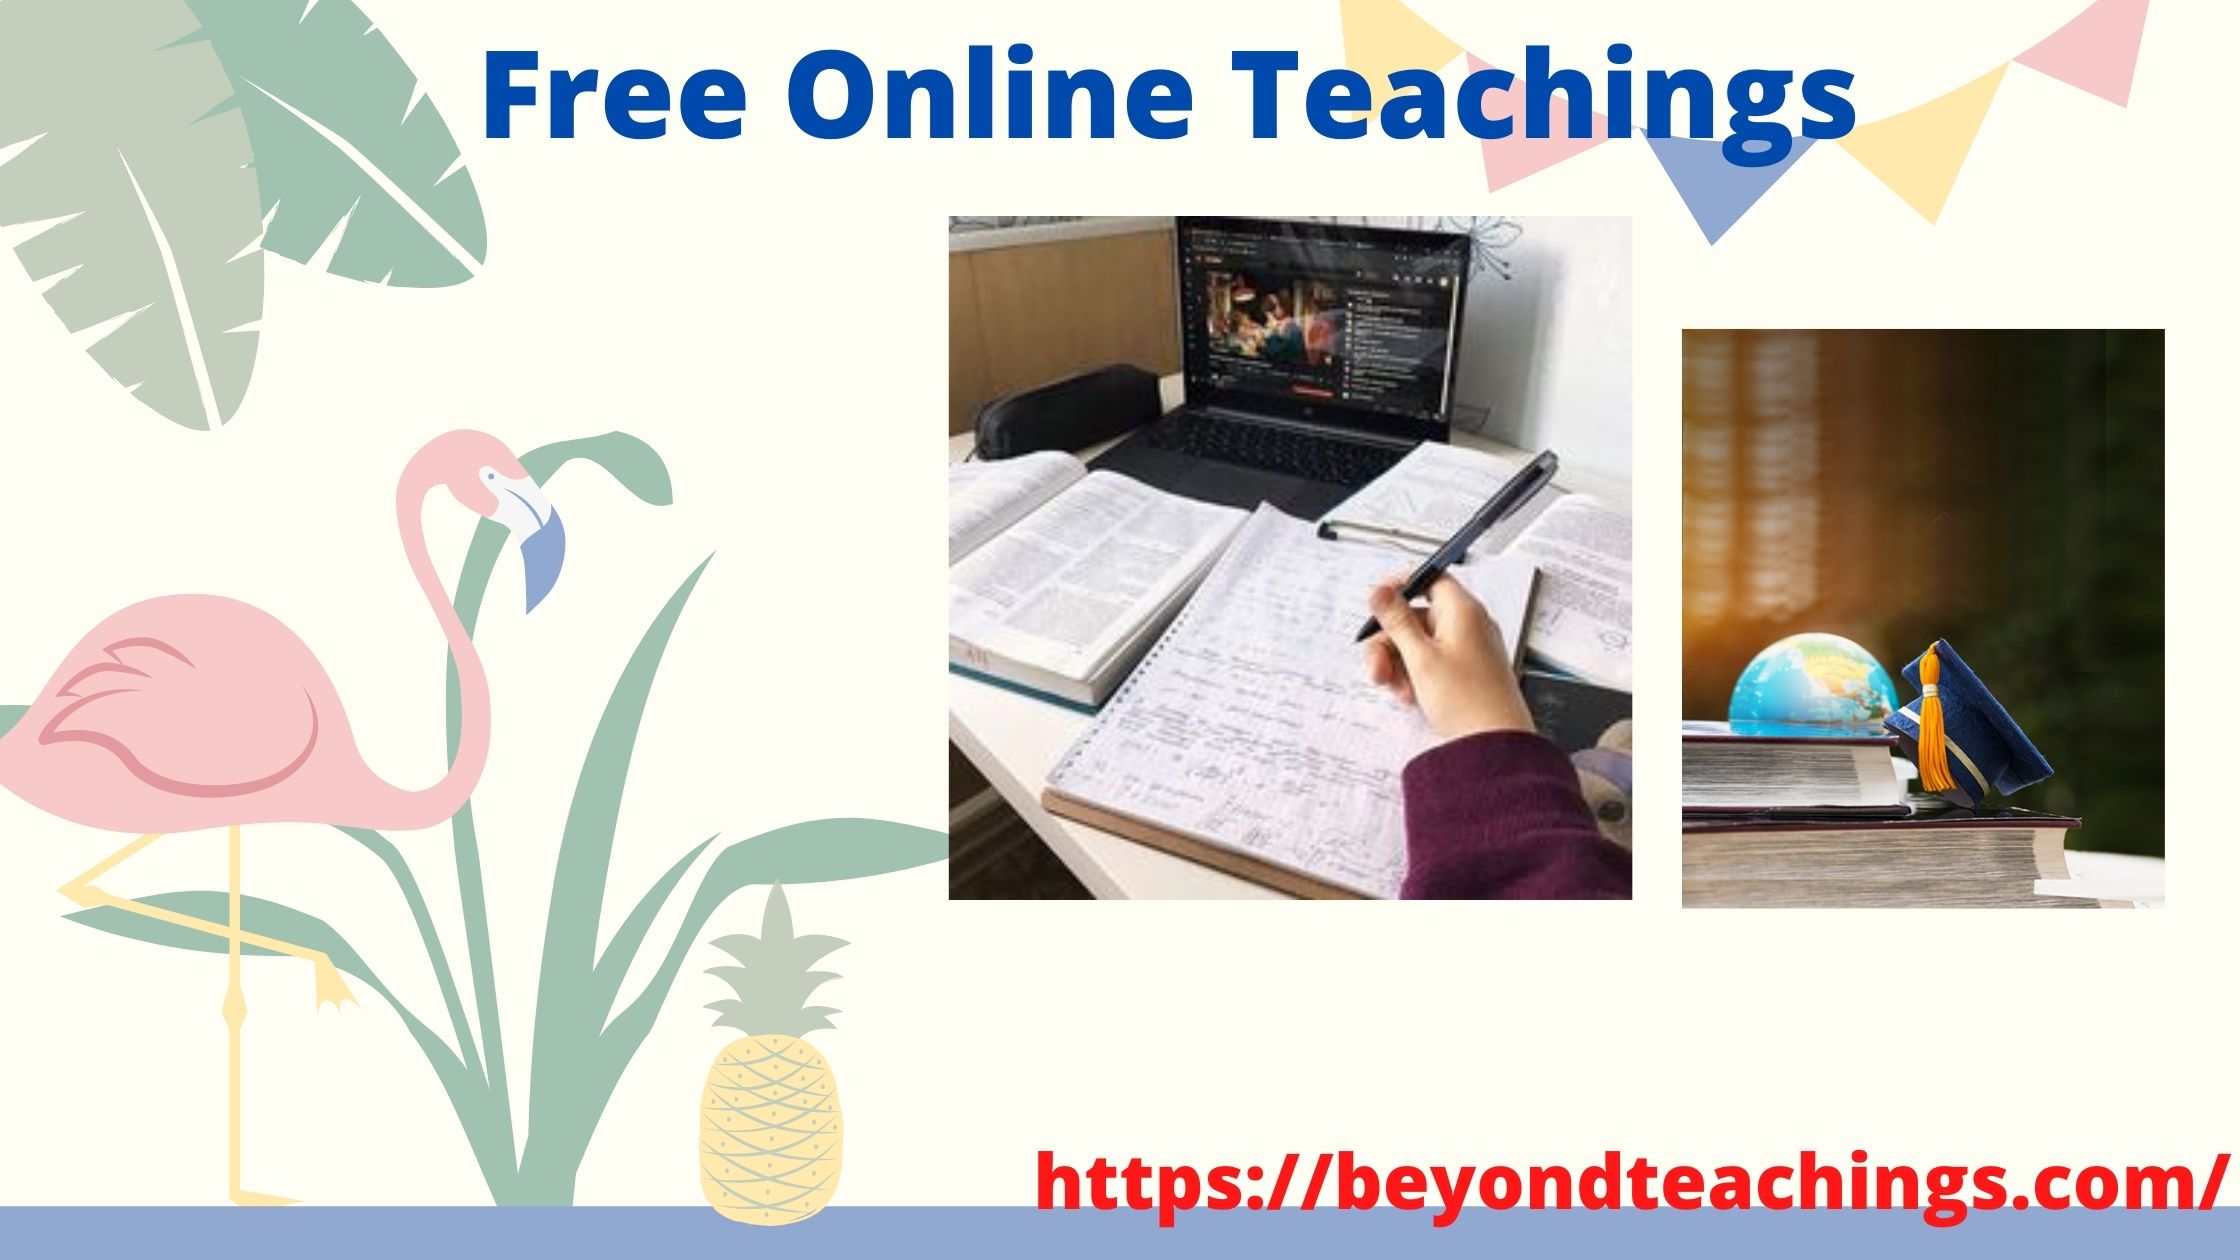 Online Free Teachings